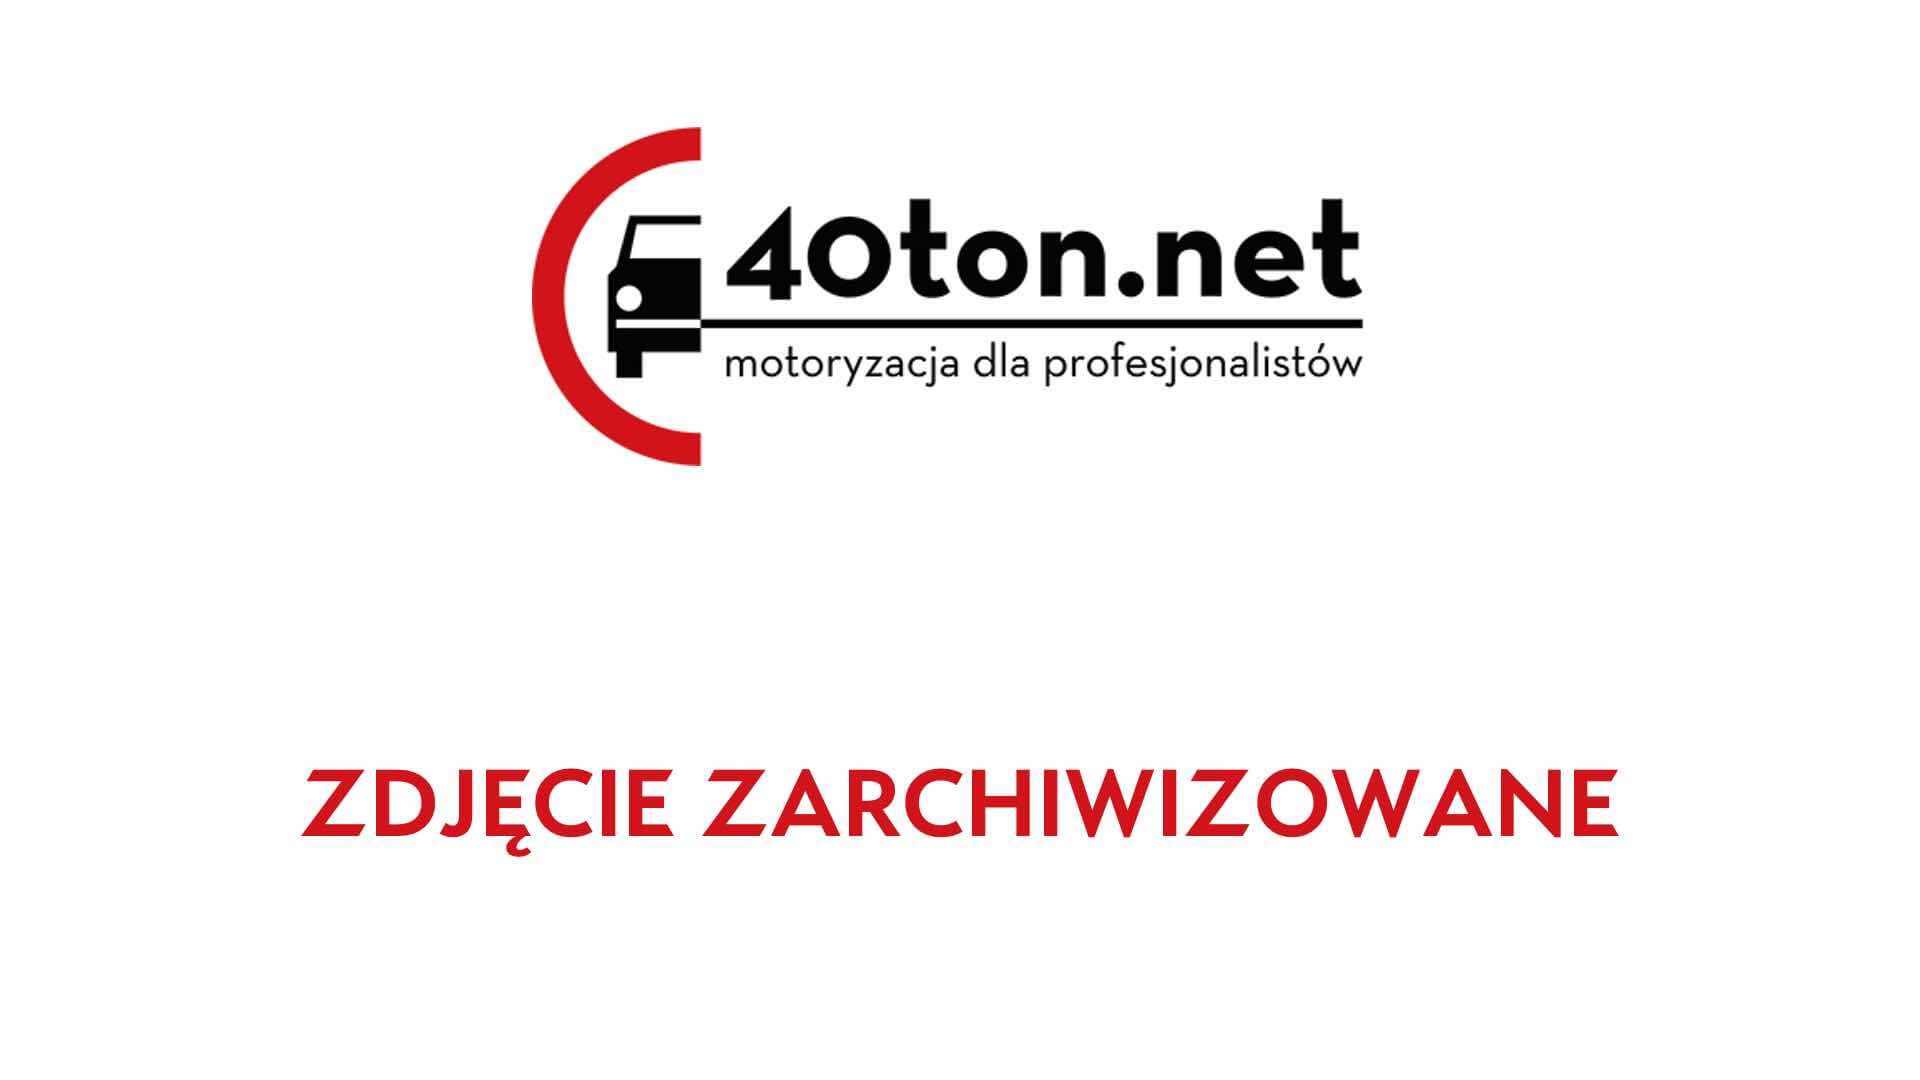 witd_szczecin_transport_ryby_zbyt_ciezki_1